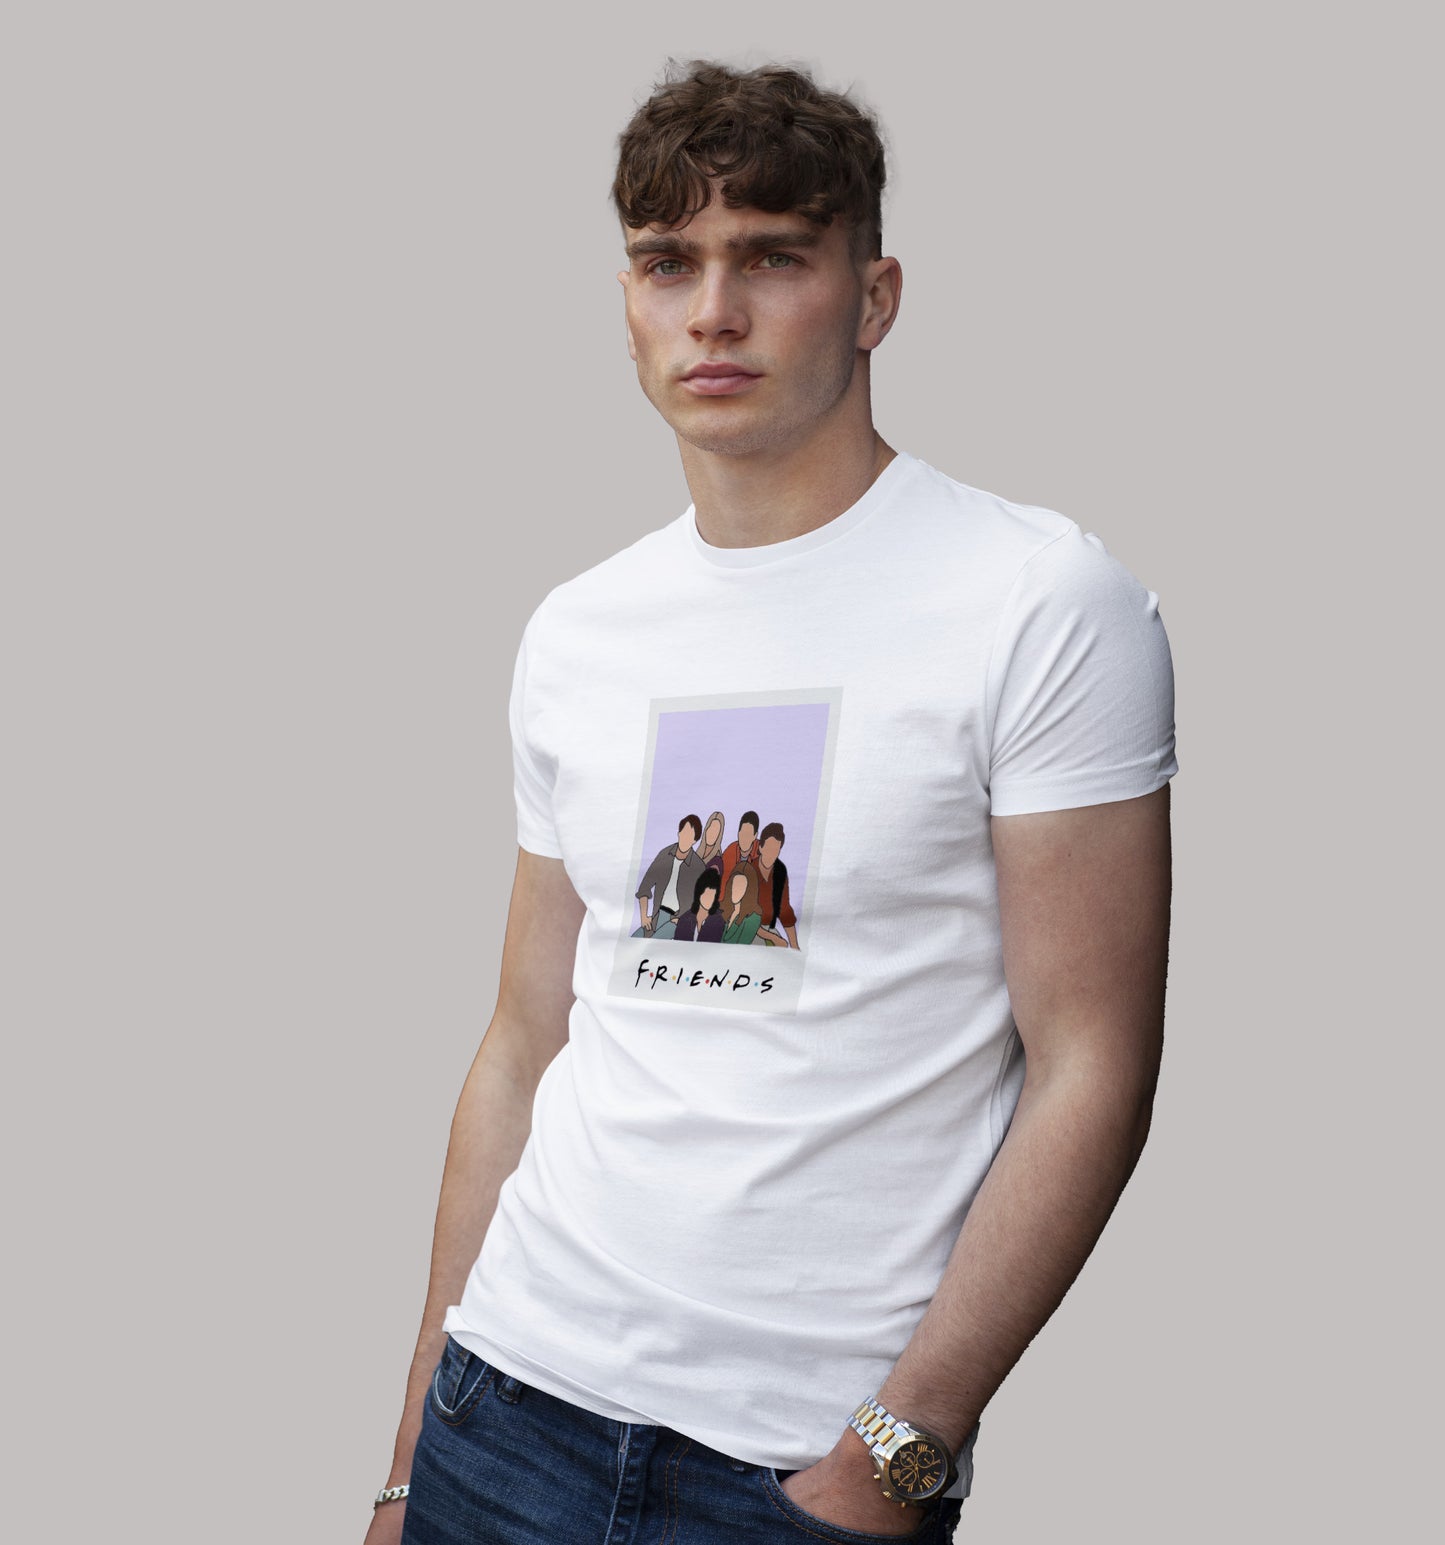 Friends (Frame) T-Shirt In Vibrant Shades - Mon Zurich Originals